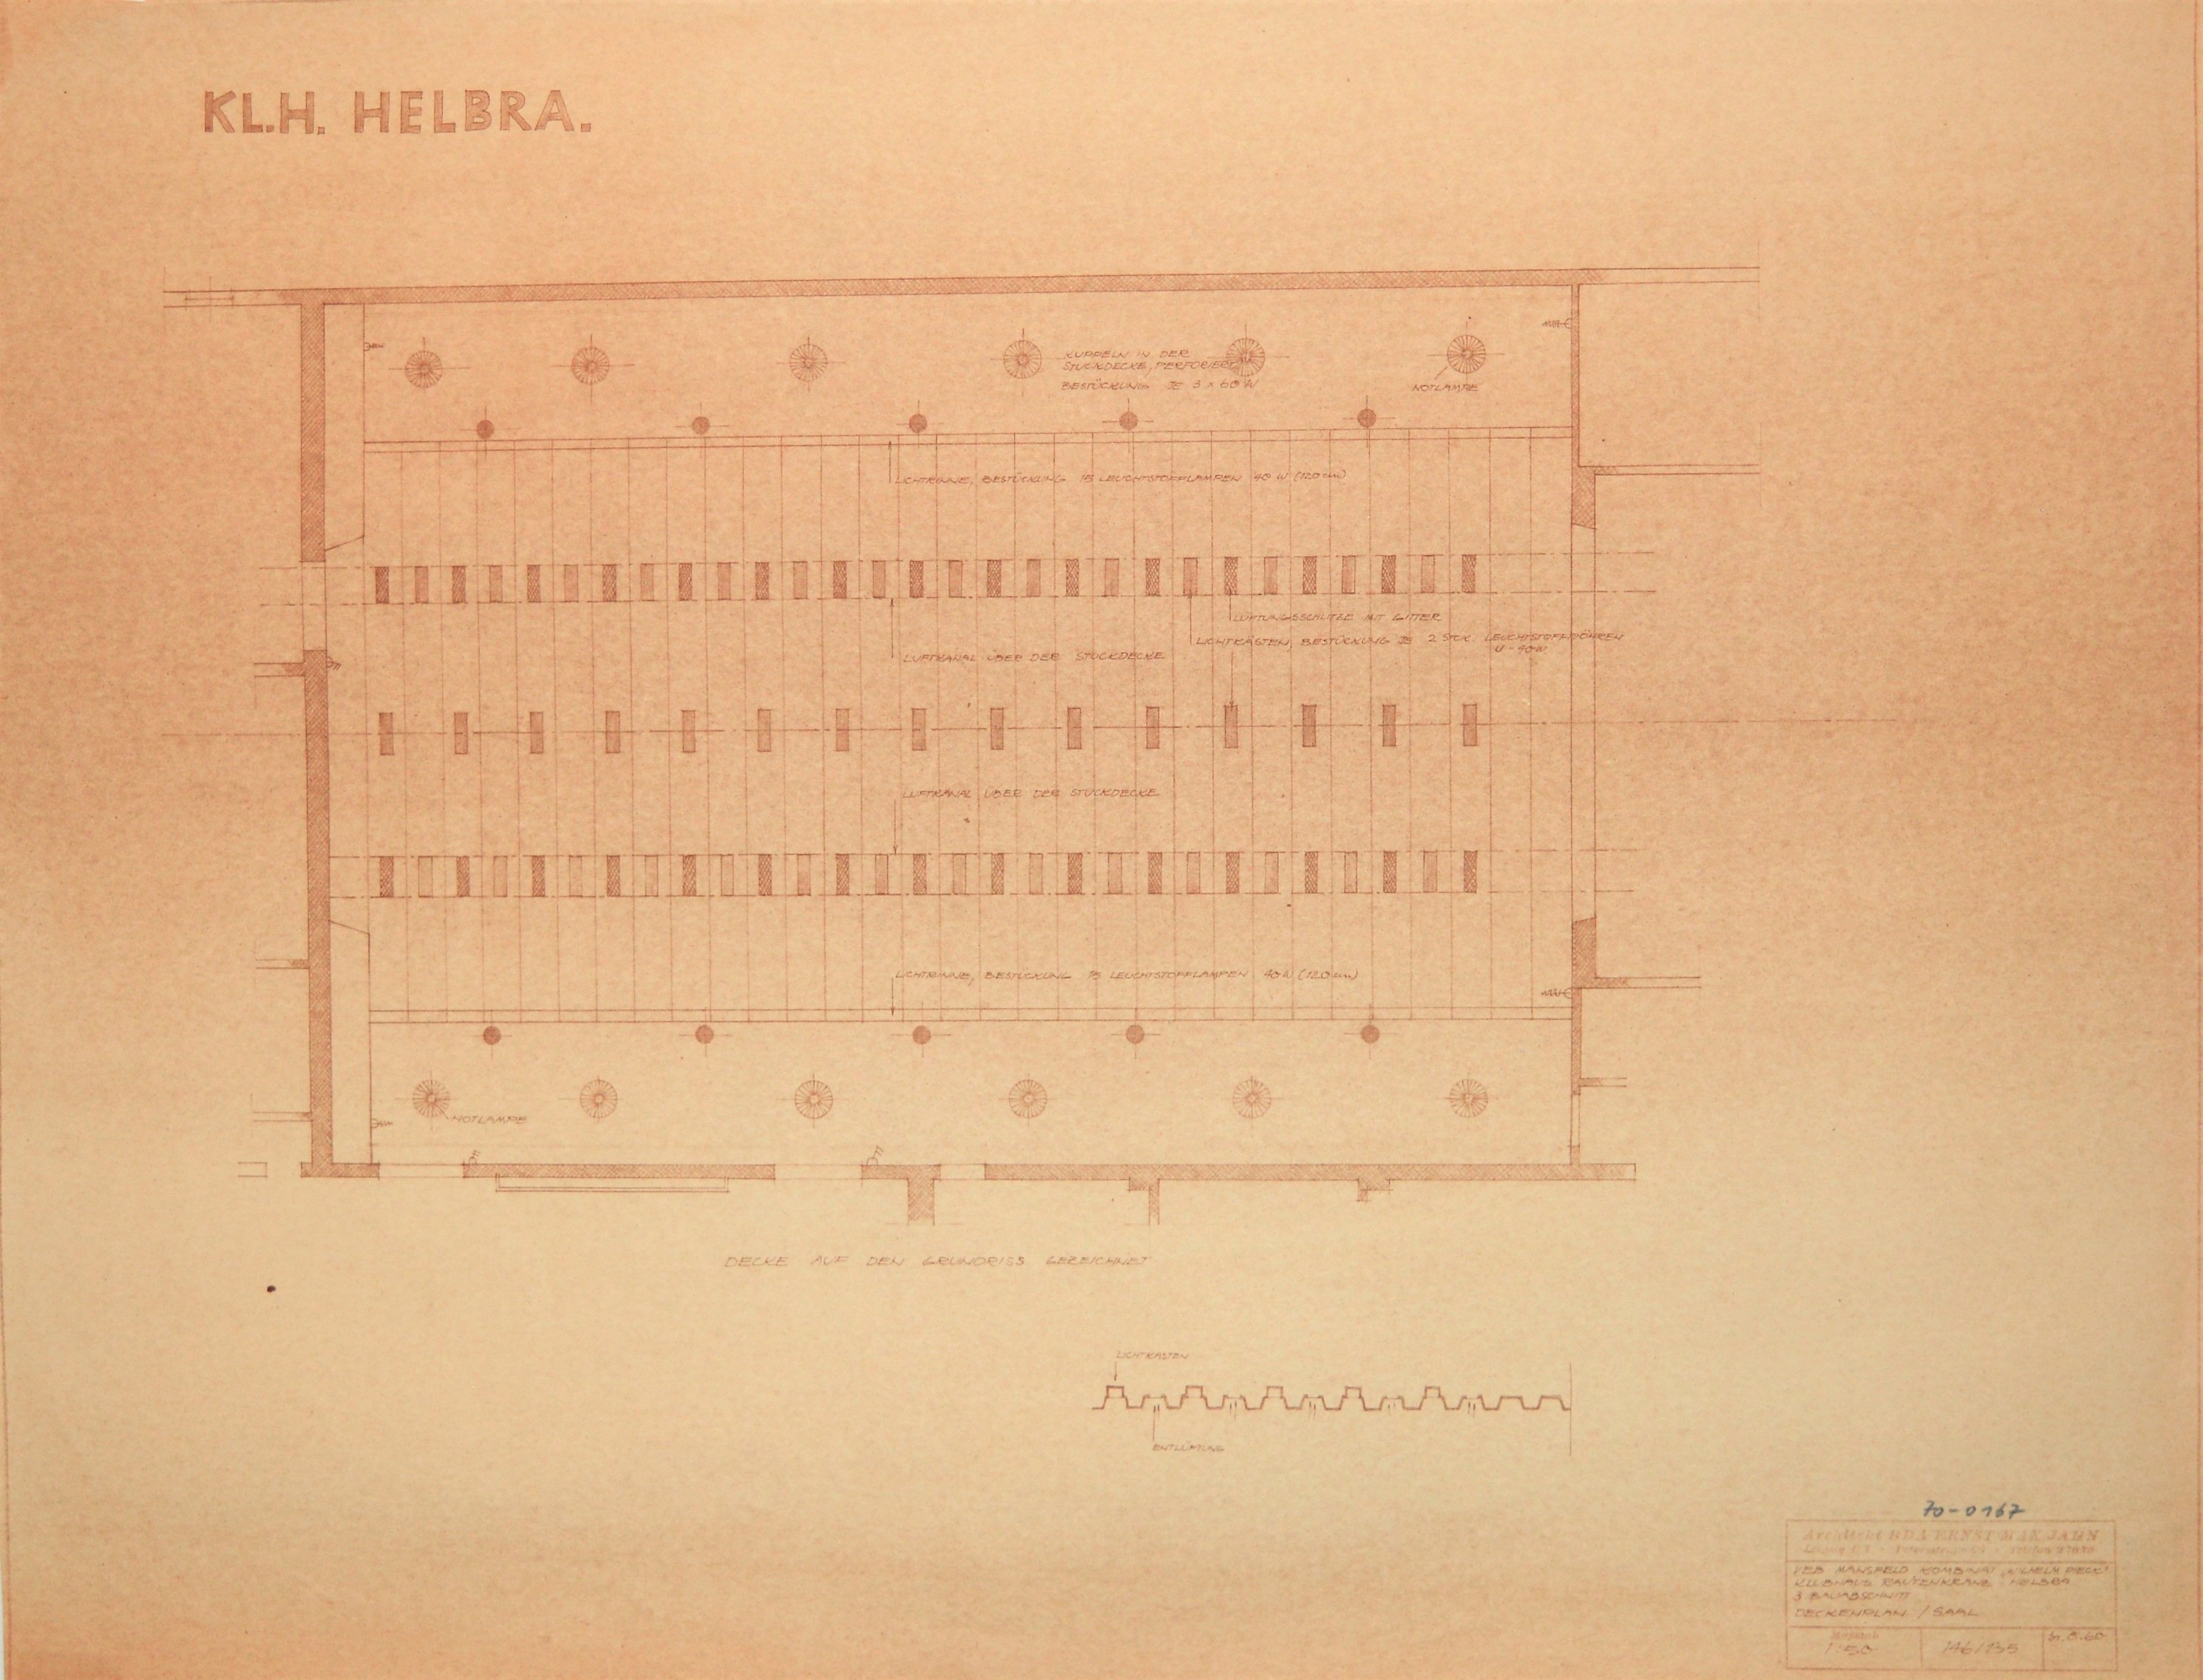 KL.H. Helbra. Klubhaus Rautenkranz - Helbra. 3. Bauabschnitt  Deckenplan / Saal (Mansfeld-Museum im Humboldtschloss CC BY-NC-SA)